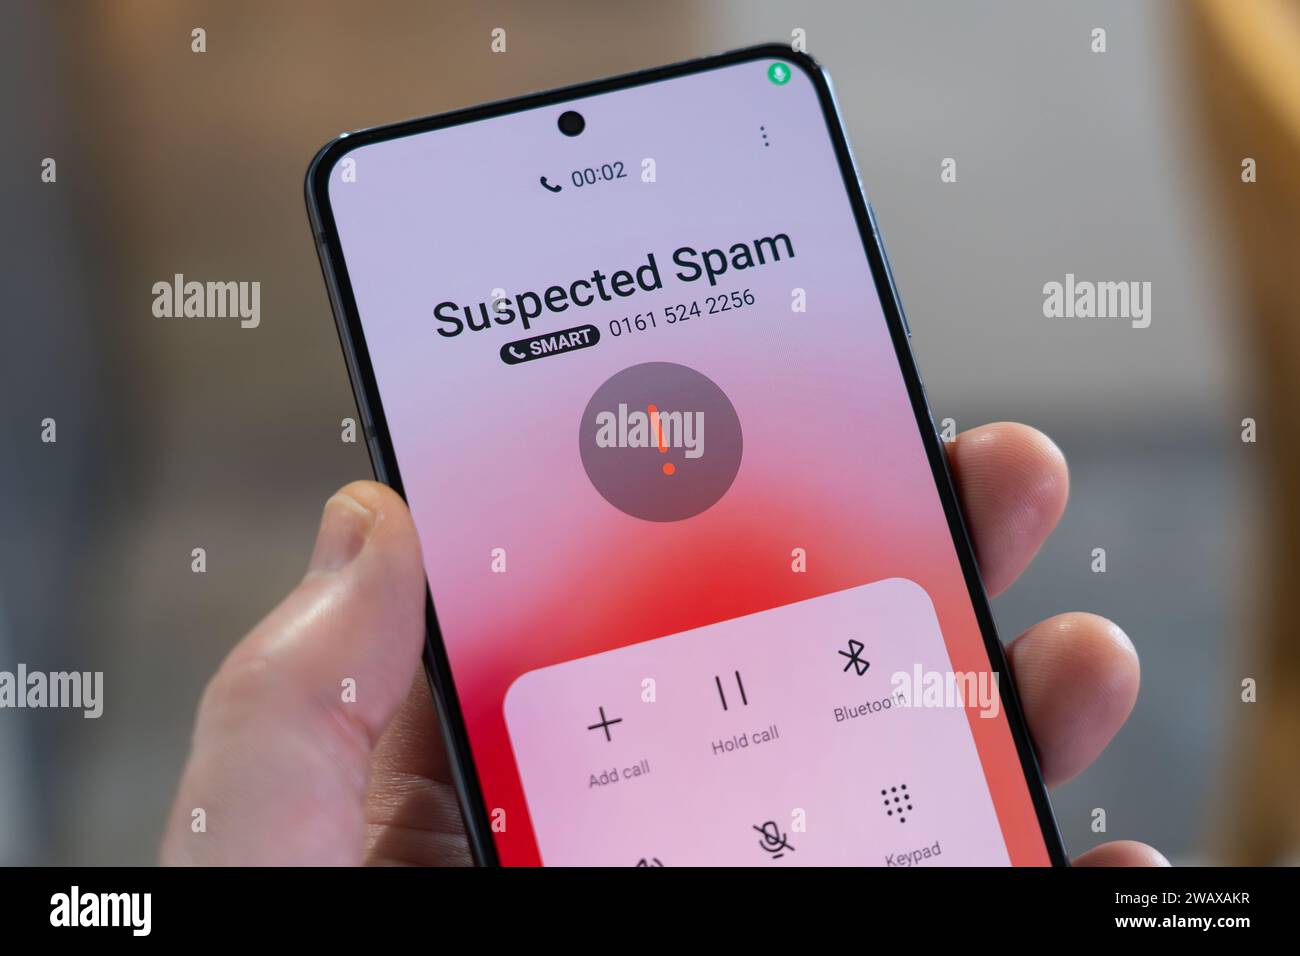 Une main tenant un smartphone avec un appel entrant identifié comme spam suspecté, Royaume-Uni. Thème : appels frauduleux, appels frauduleux, appels à froid, appels à froid Banque D'Images